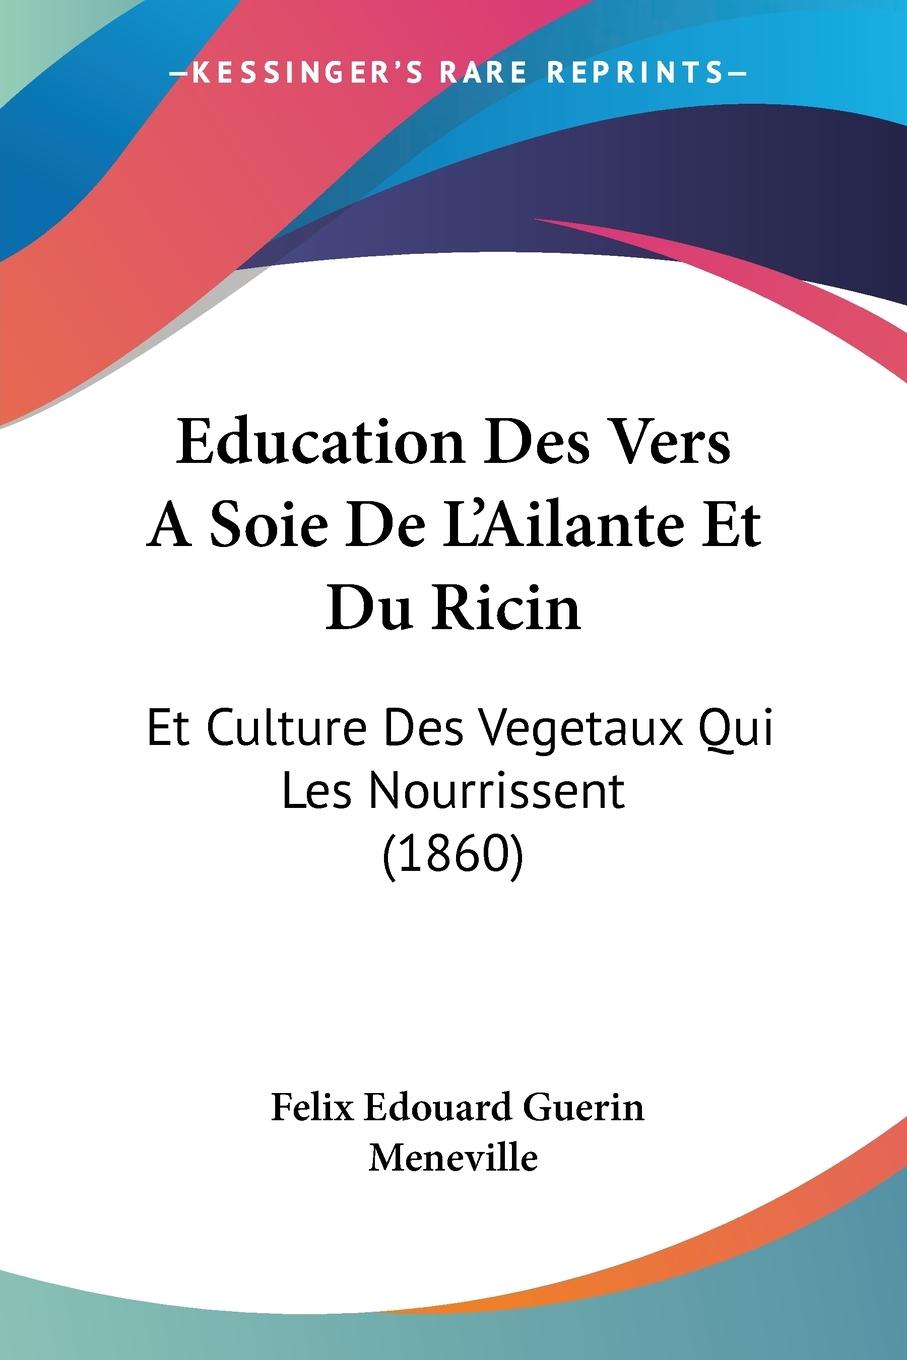 Education Des Vers ASoie De L Ailante Et Du Ricin - Meneville, Felix Edouard Guerin